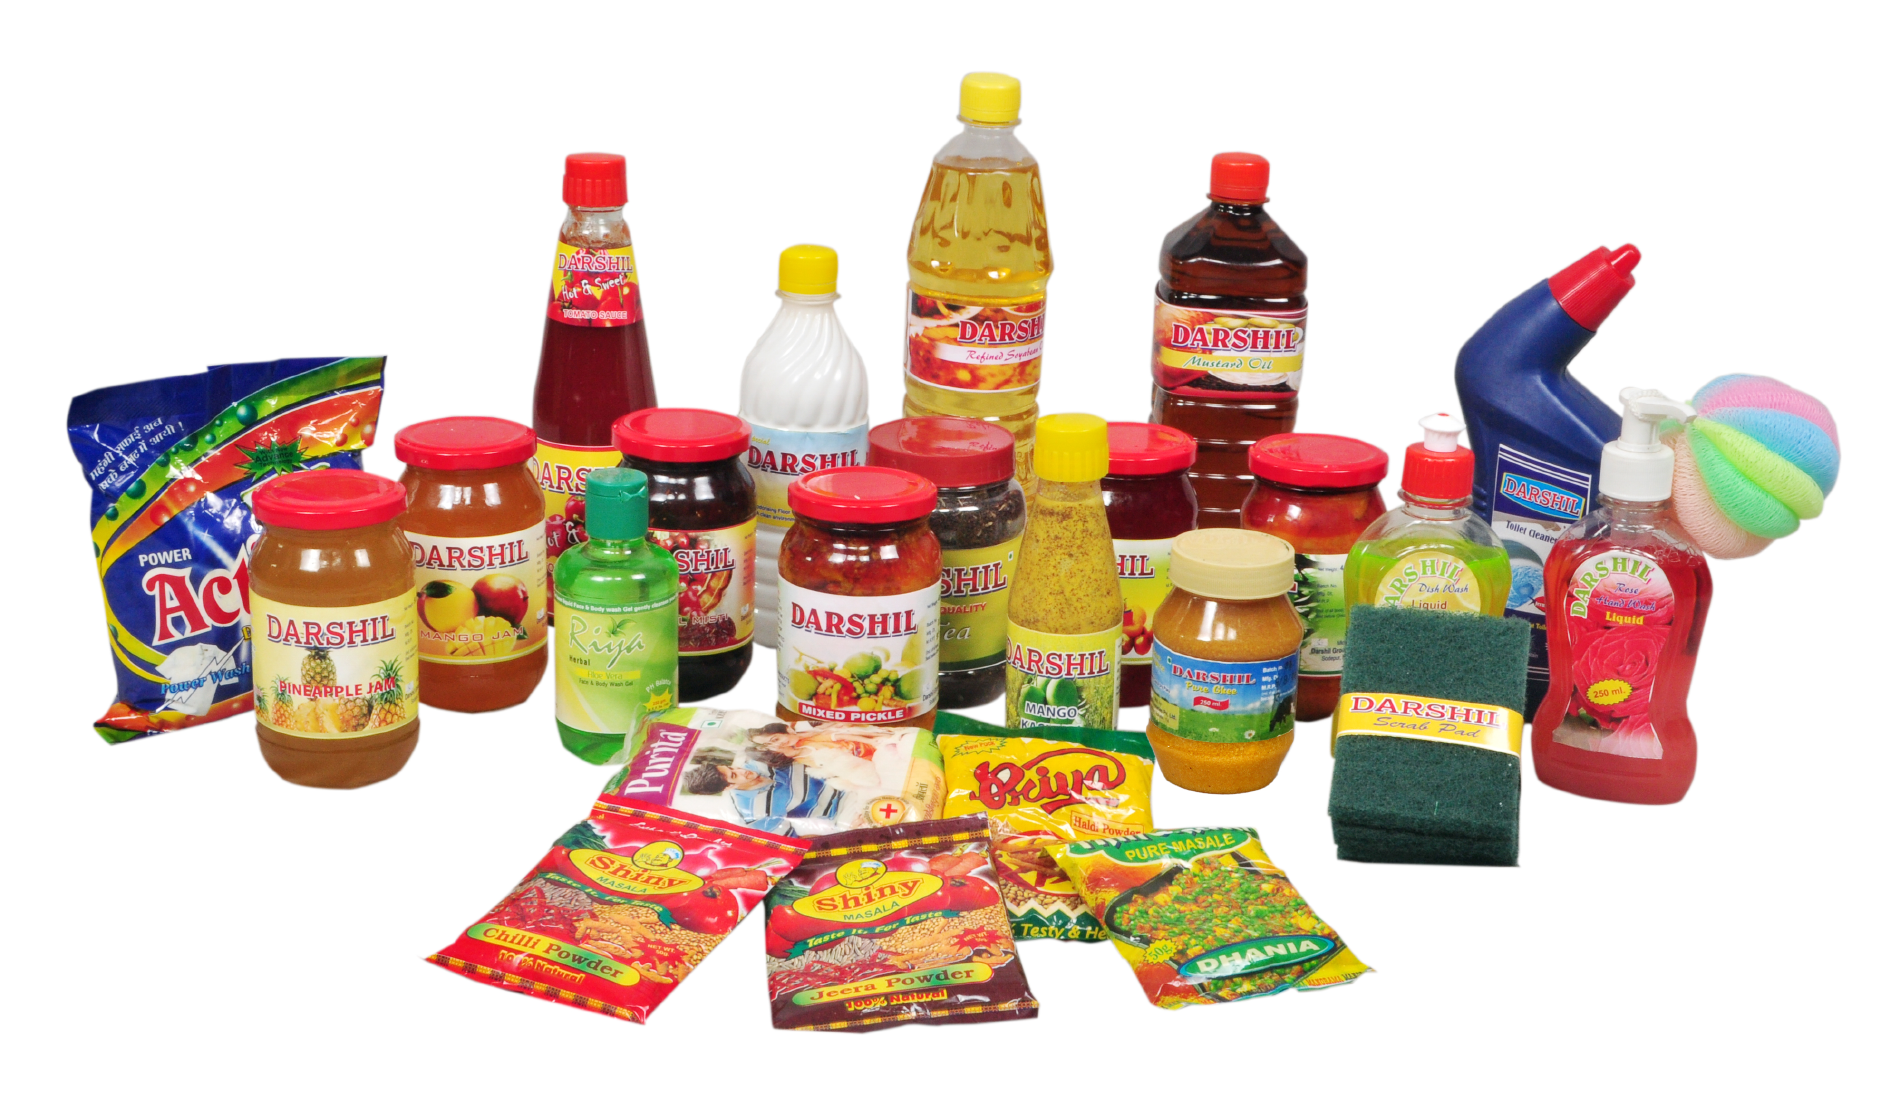 تمت الإفادة صور مواد غذائية لمحلات تجارية زيزووم للأمن والحماية